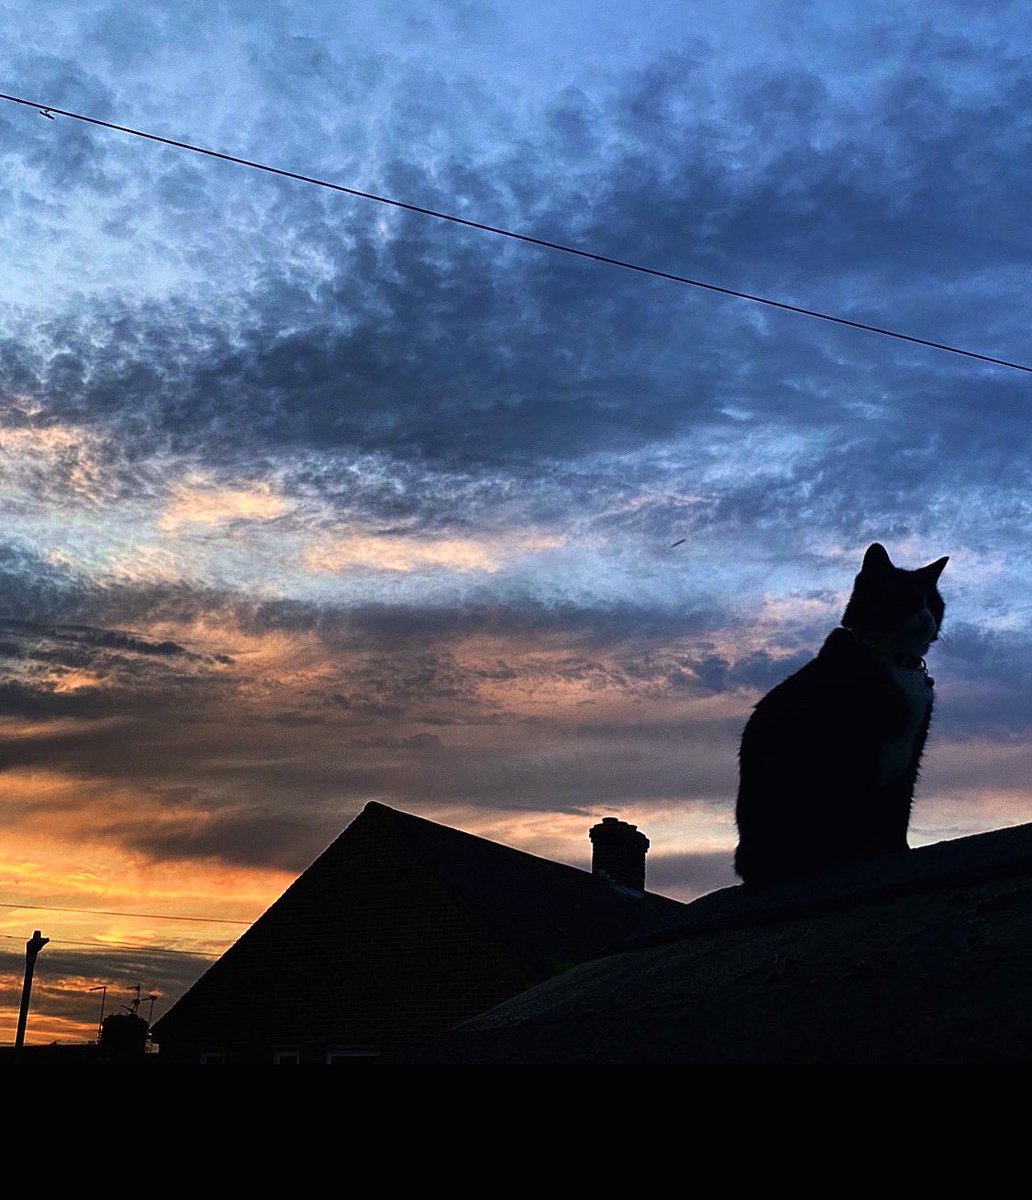 Poldark Wishing Everyone A Happy Caturday. #caturday #CatsOfTwitter #catphoto